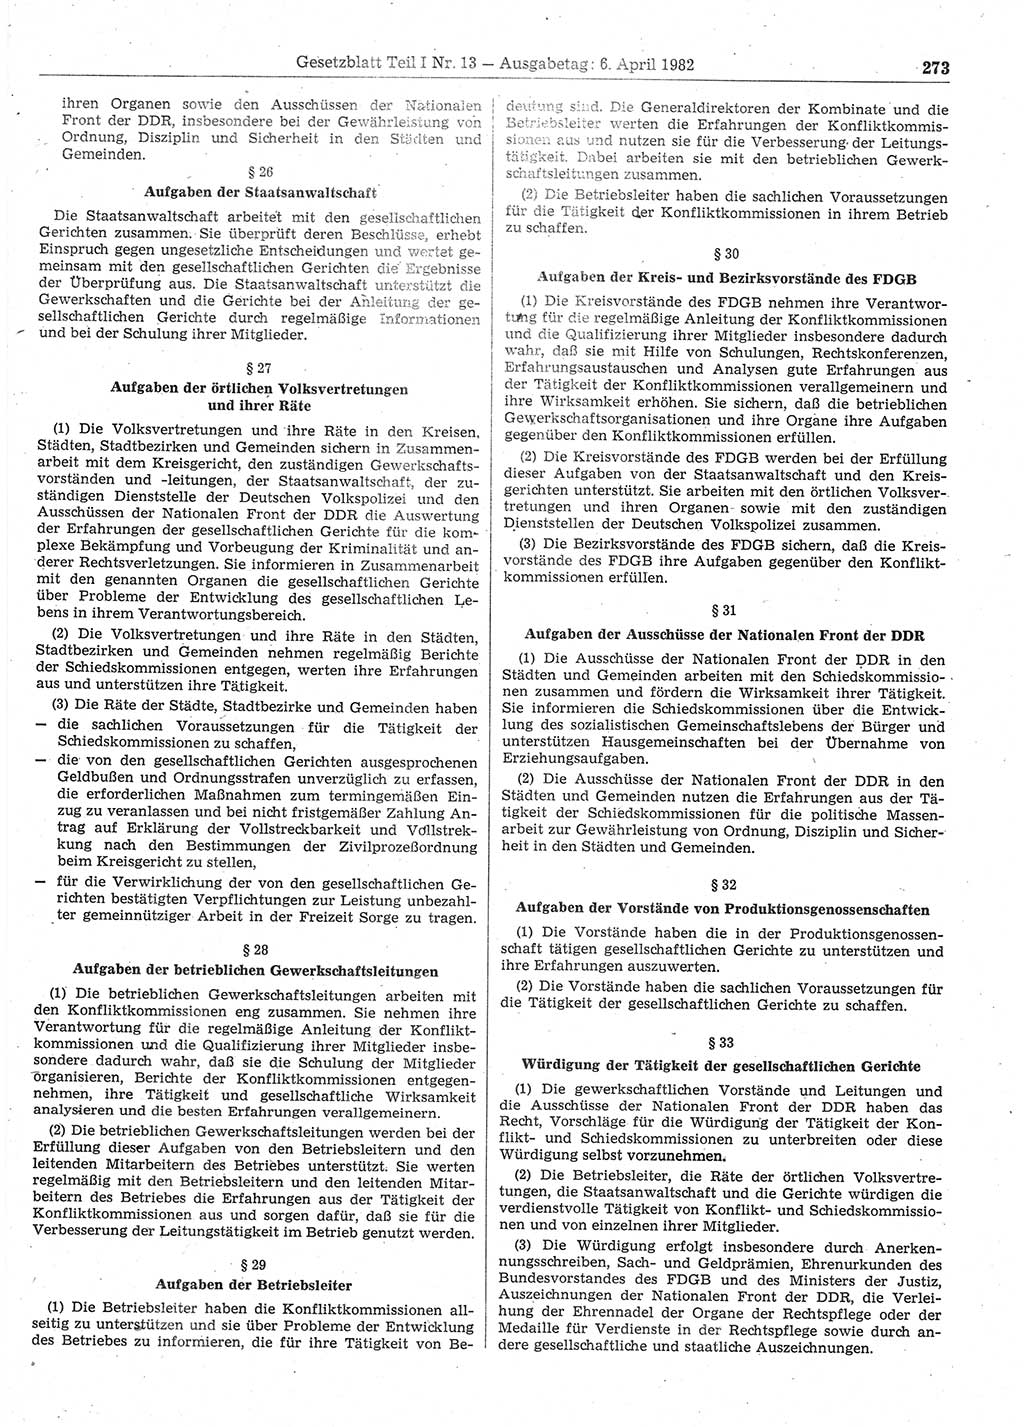 Gesetzblatt (GBl.) der Deutschen Demokratischen Republik (DDR) Teil Ⅰ 1982, Seite 273 (GBl. DDR Ⅰ 1982, S. 273)